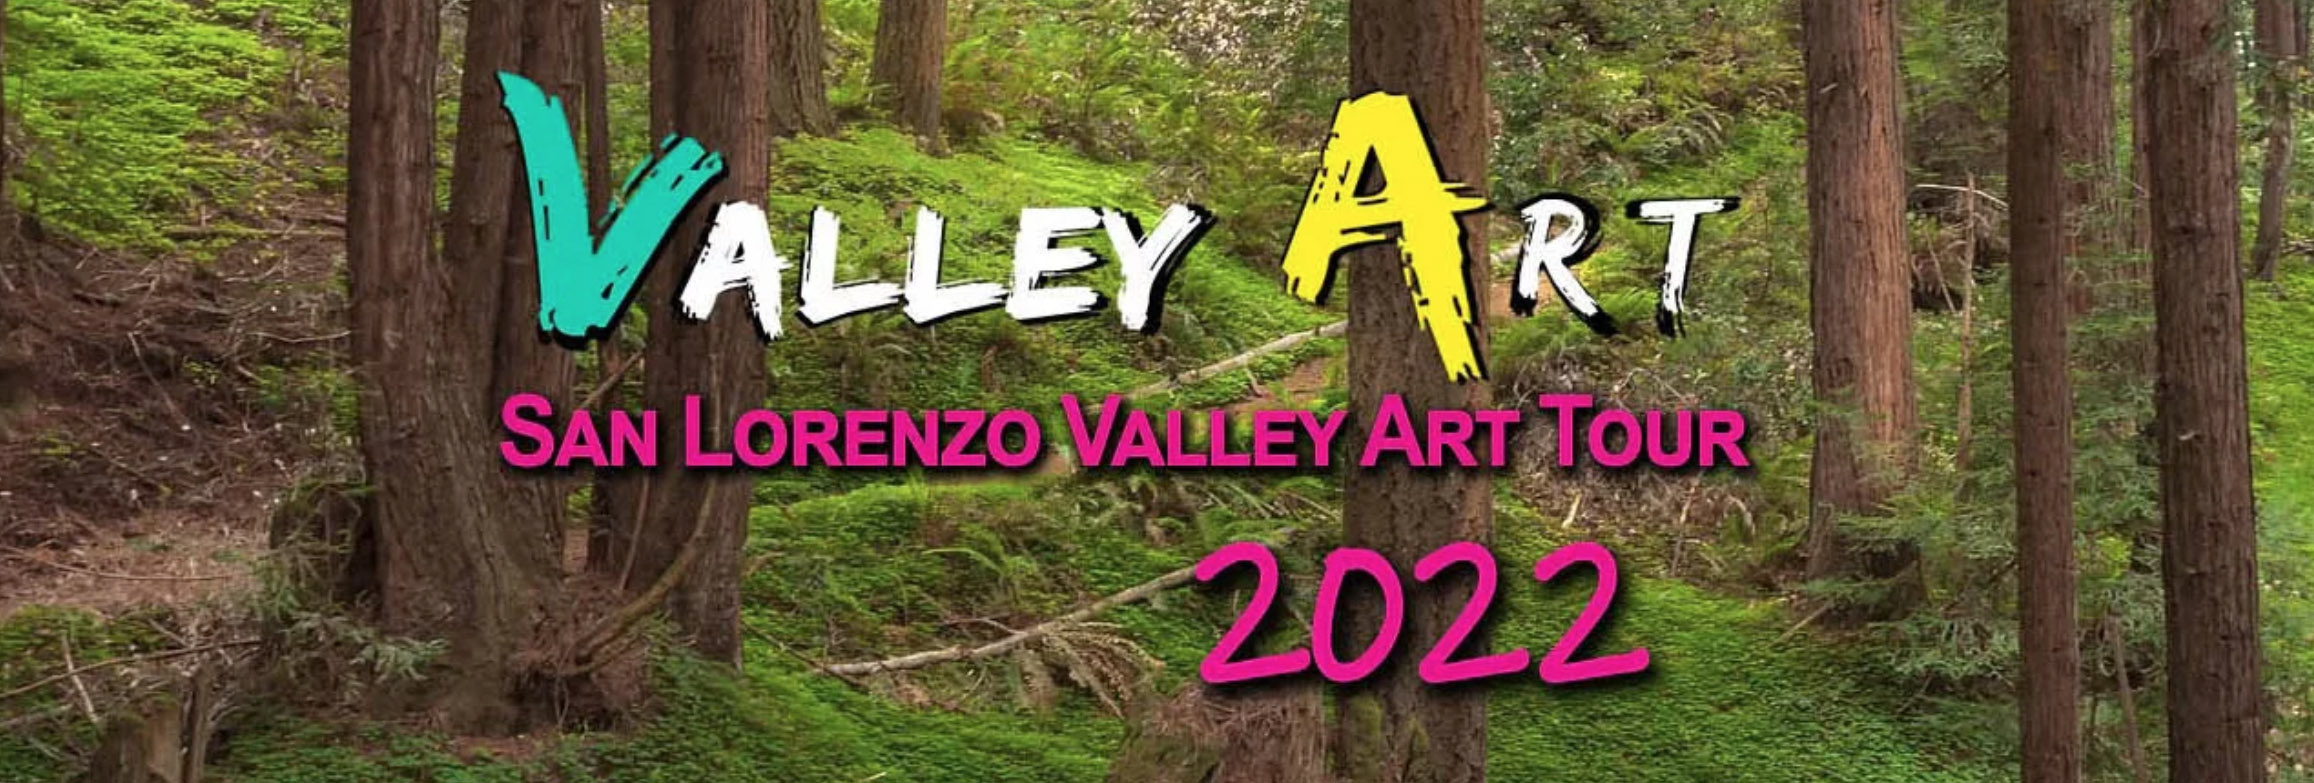 Valley Art Tour